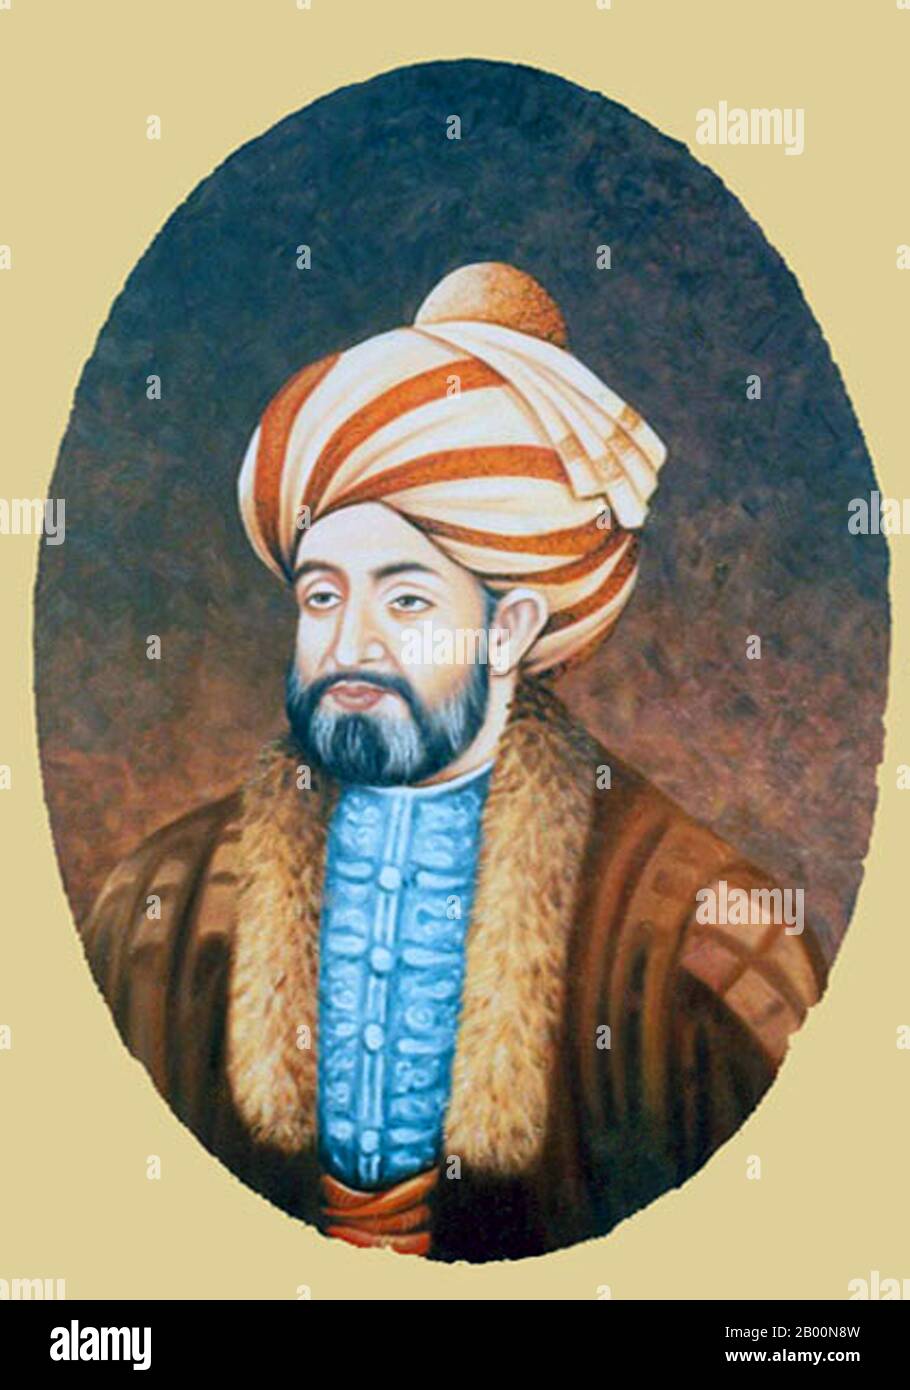 Afghanistan : Ahmad Shah Durrani, fondateur de l'état moderne de l'Afghanistan en 1747 et dirigeant de l'Empire Durrani. L'Empire Durrani, également appelé l'Empire afghan, était une monarchie centrée en Afghanistan et comprenait le nord-est de l'Iran, l'État moderne du Pakistan ainsi que la région du Punjab en Inde. Il a été établi à Kandahar en 1747 par Ahmad Shah Durrani, commandant militaire afghan sous la direction de Nader Shah de Perse et chef de la tribu Abdali. Après la mort d'Ahmad Shah vers 1773, l'Emirship fut transmis à ses enfants et sa capitale s'emporta à Kaboul. Banque D'Images